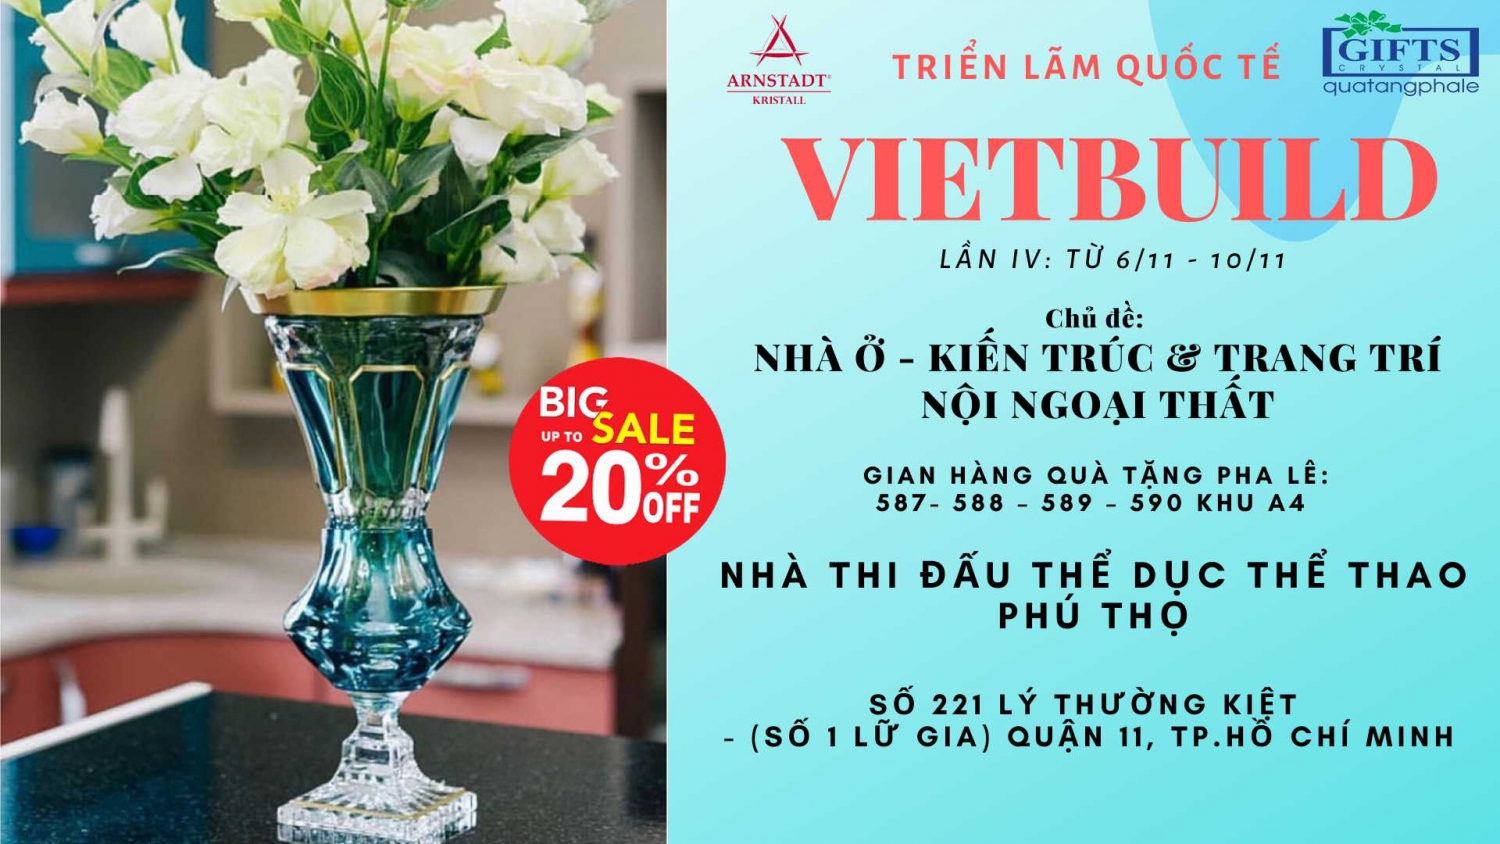 trien-lam-vietbuild-11-2019